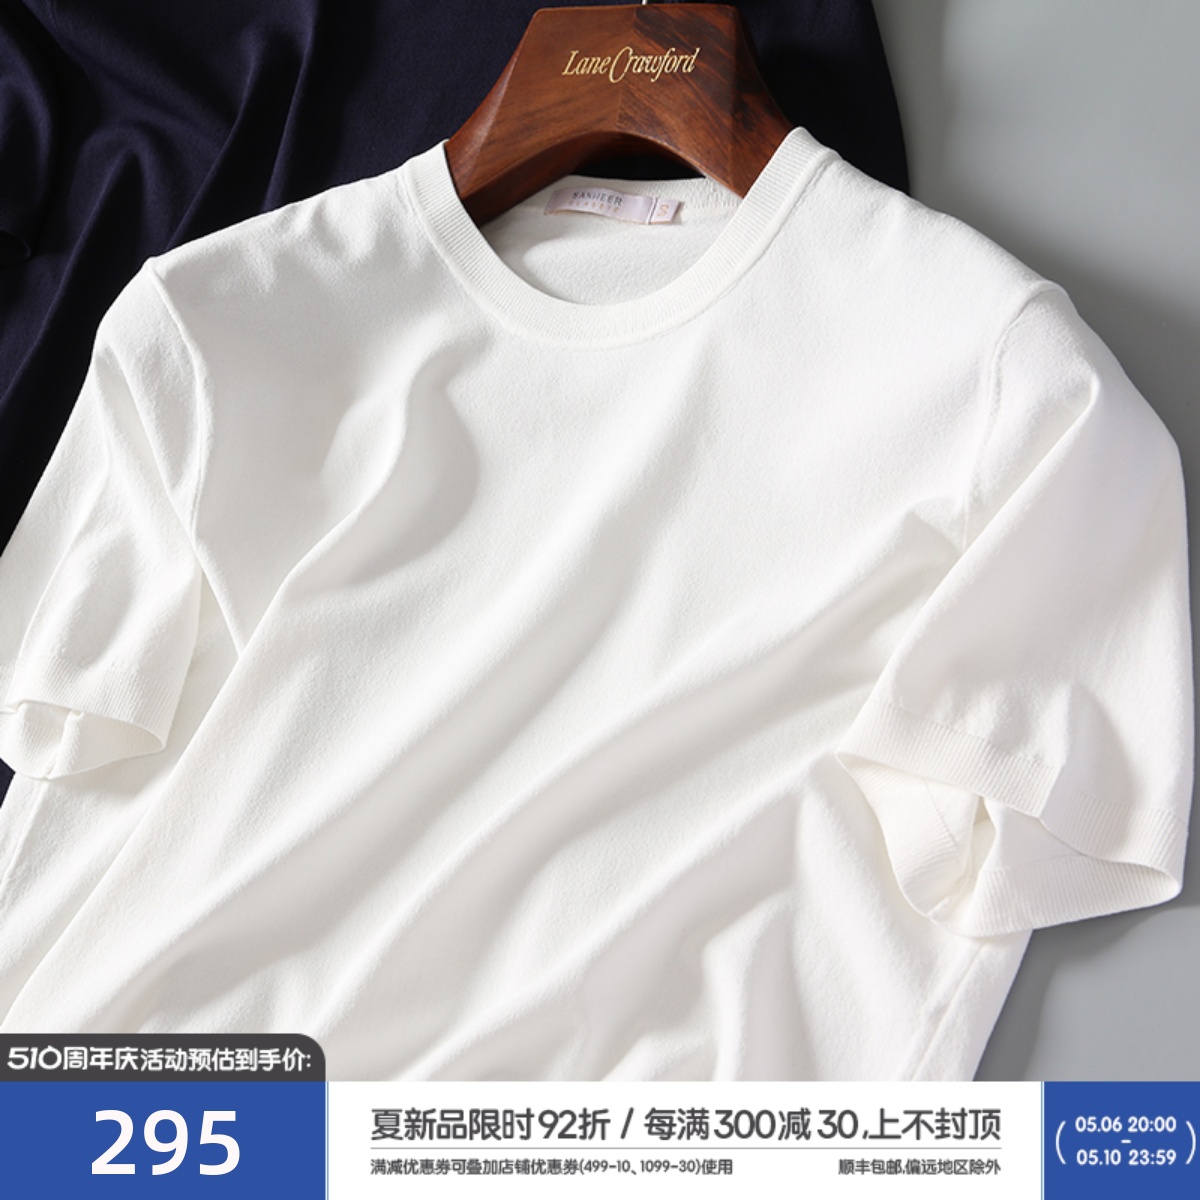 夏季商务基础款 16针横机工艺针织衫 男士白色短袖圆领T恤 DAT599